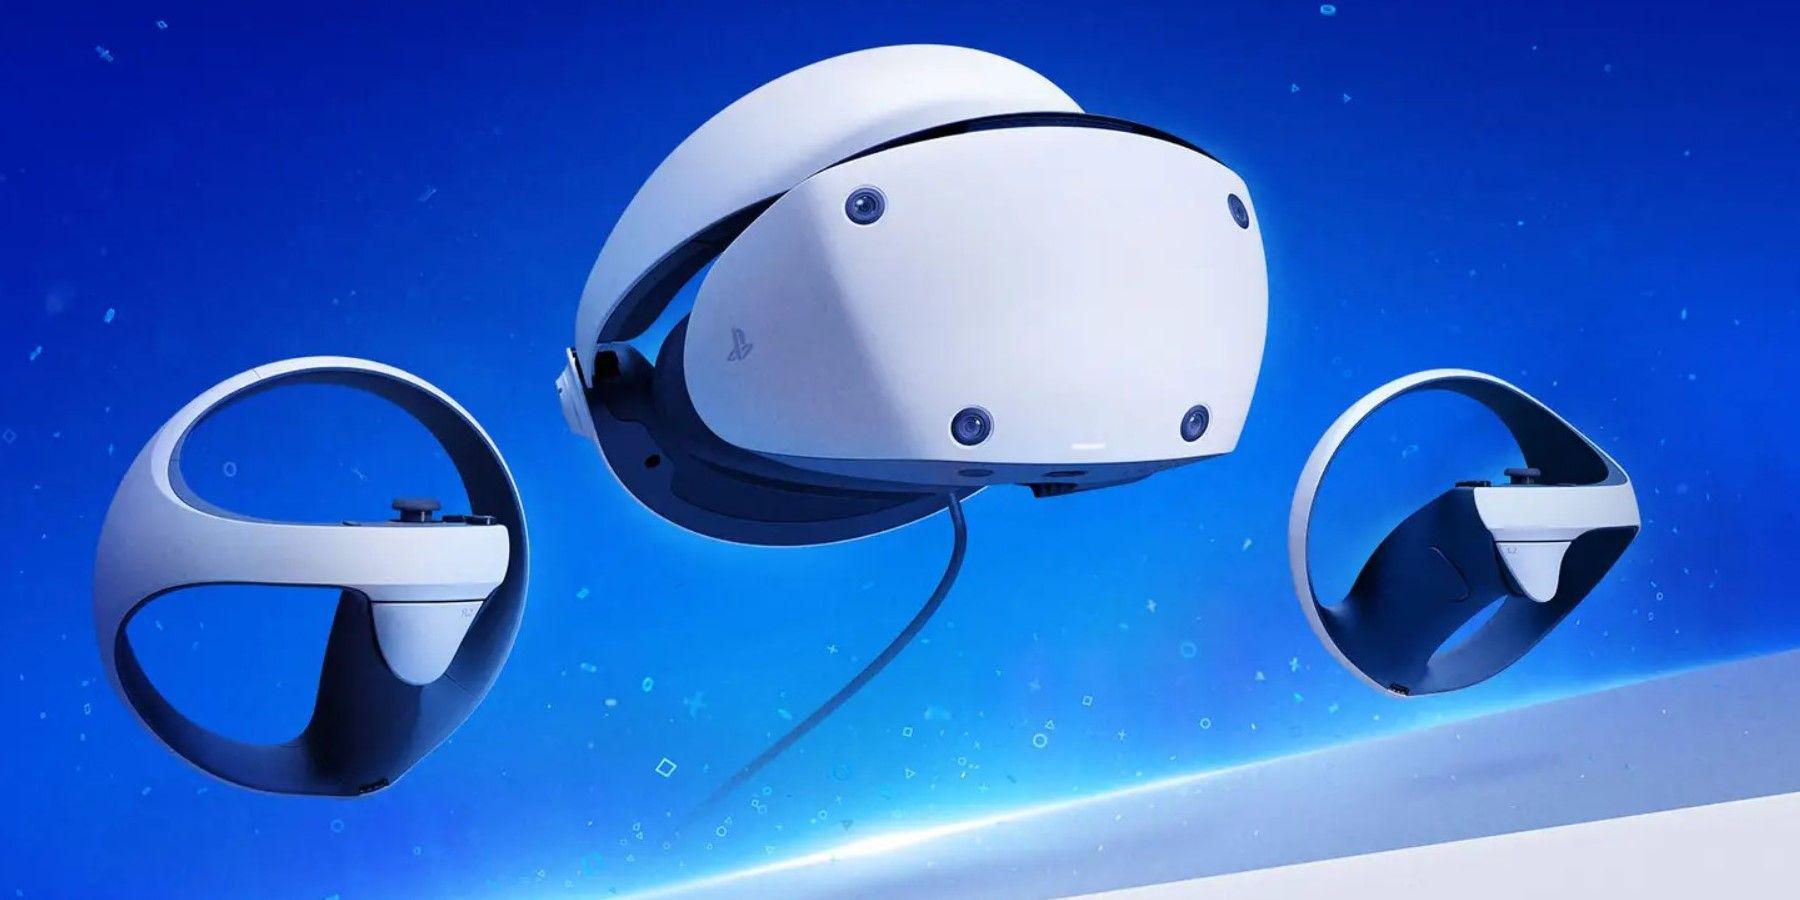 O PlayStation VR2 apresenta um impressionante modo cinematográfico